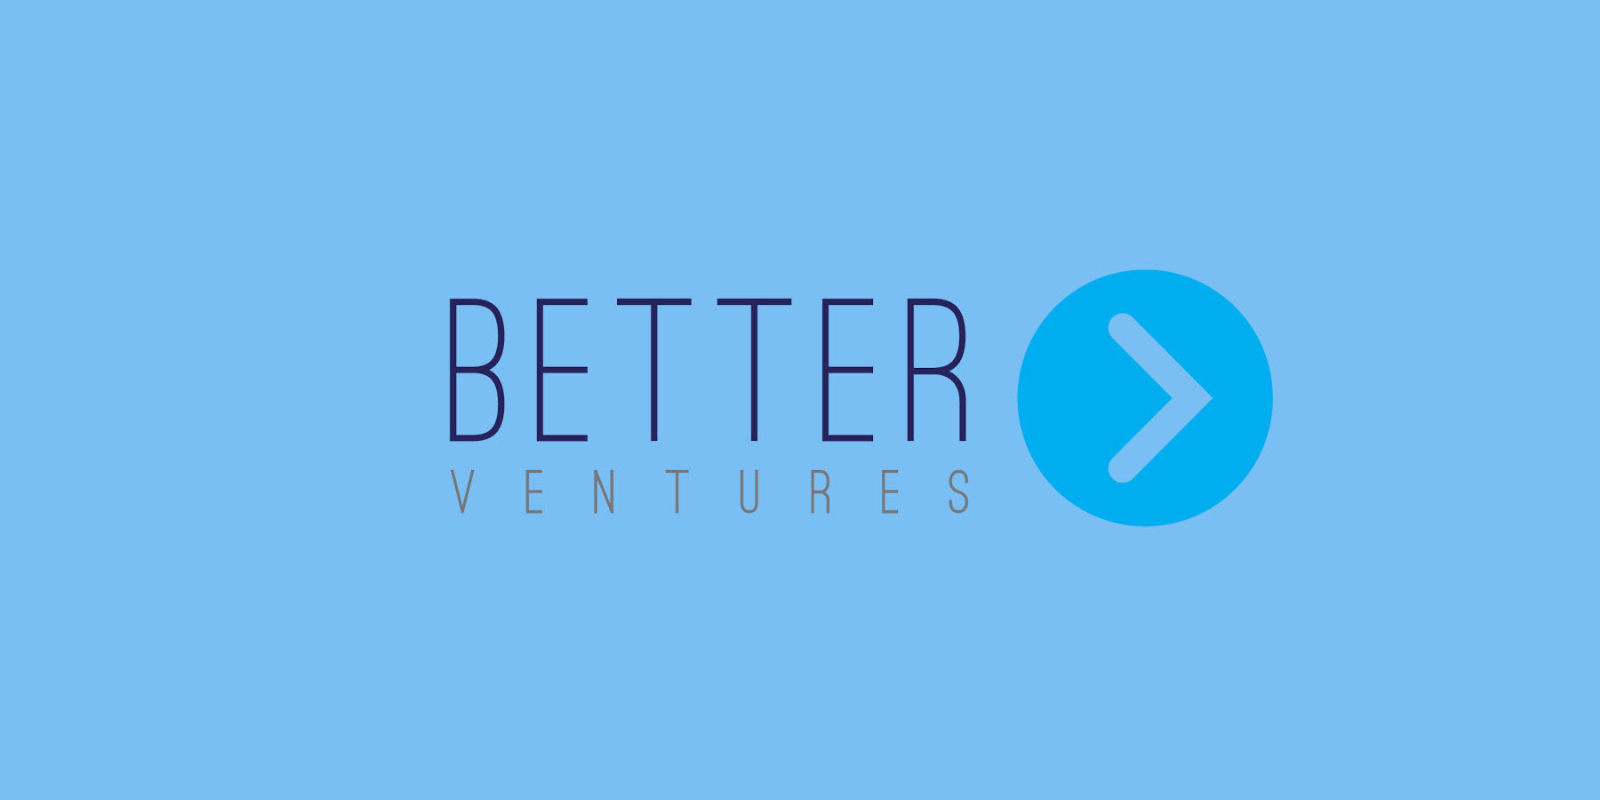 Better Ventures: Backing Entrepreneurs Building a Better World